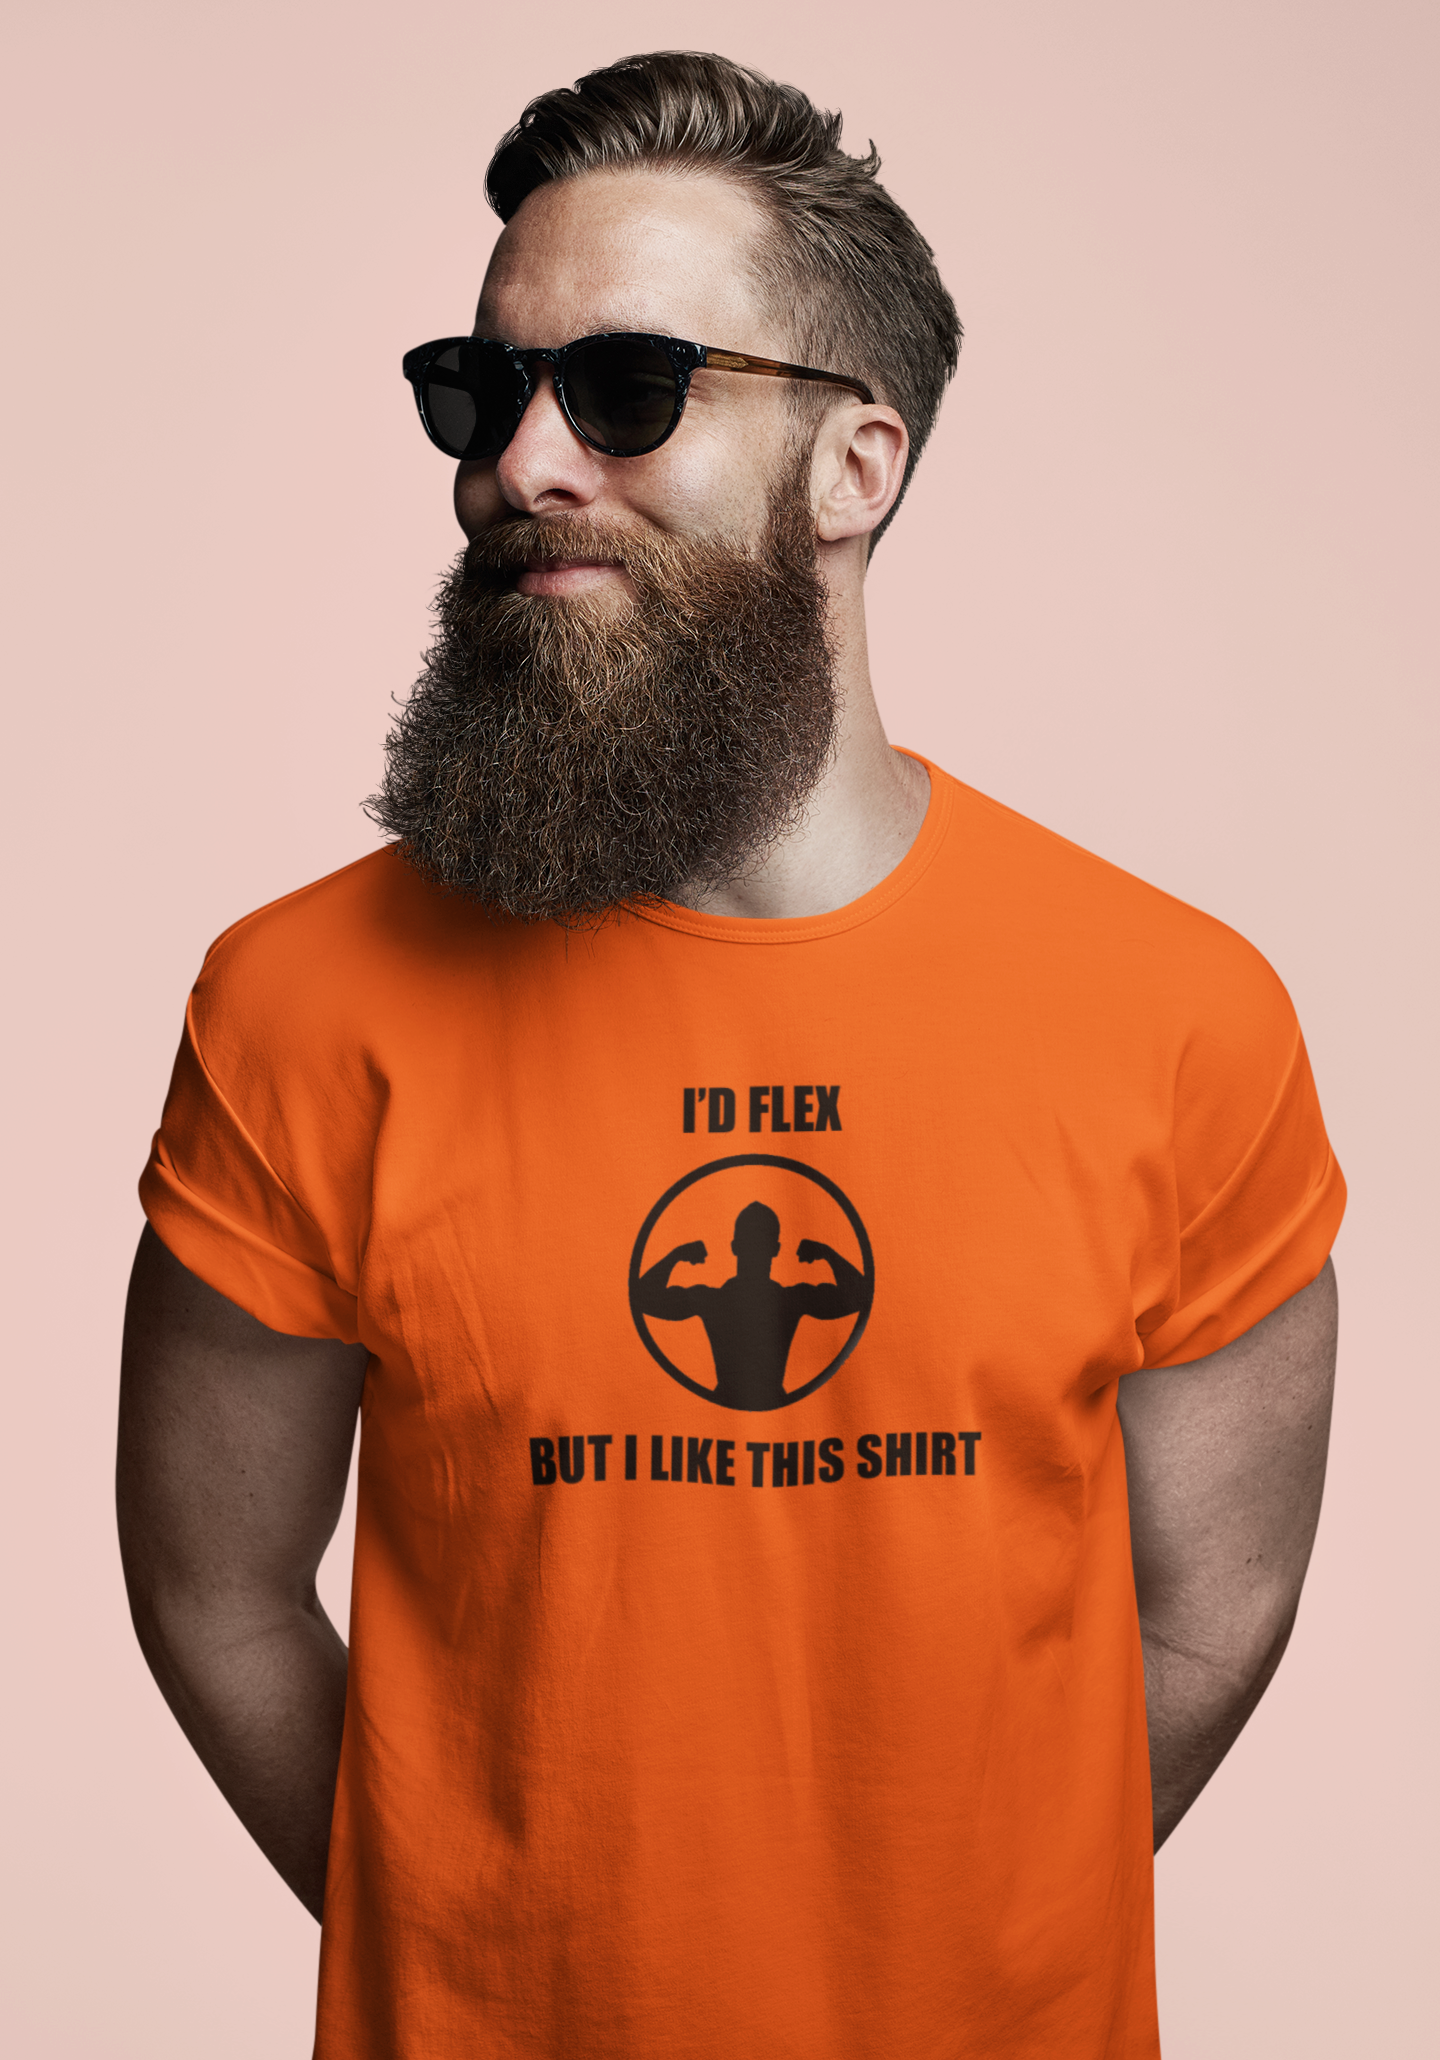 I’d flex but I like this tshirt.